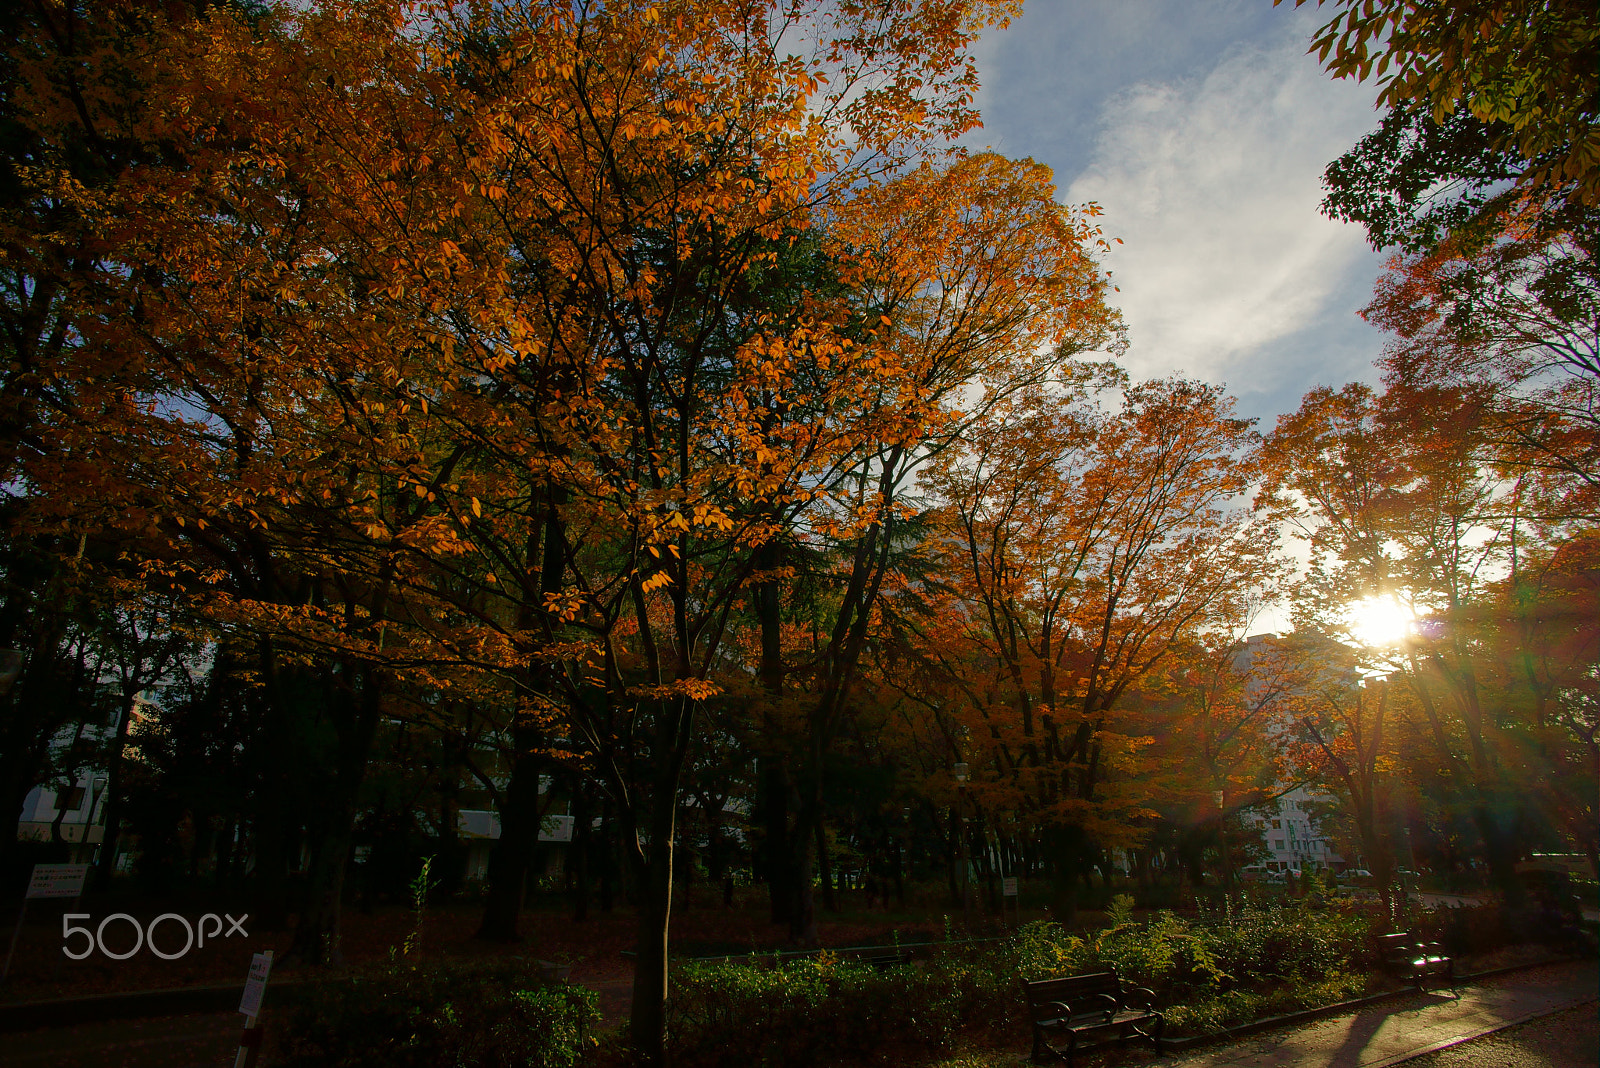 Voigtlander Color Skopar 20mm f/3.5 SLII Aspherical sample photo. Autumn leaves at dusk photography